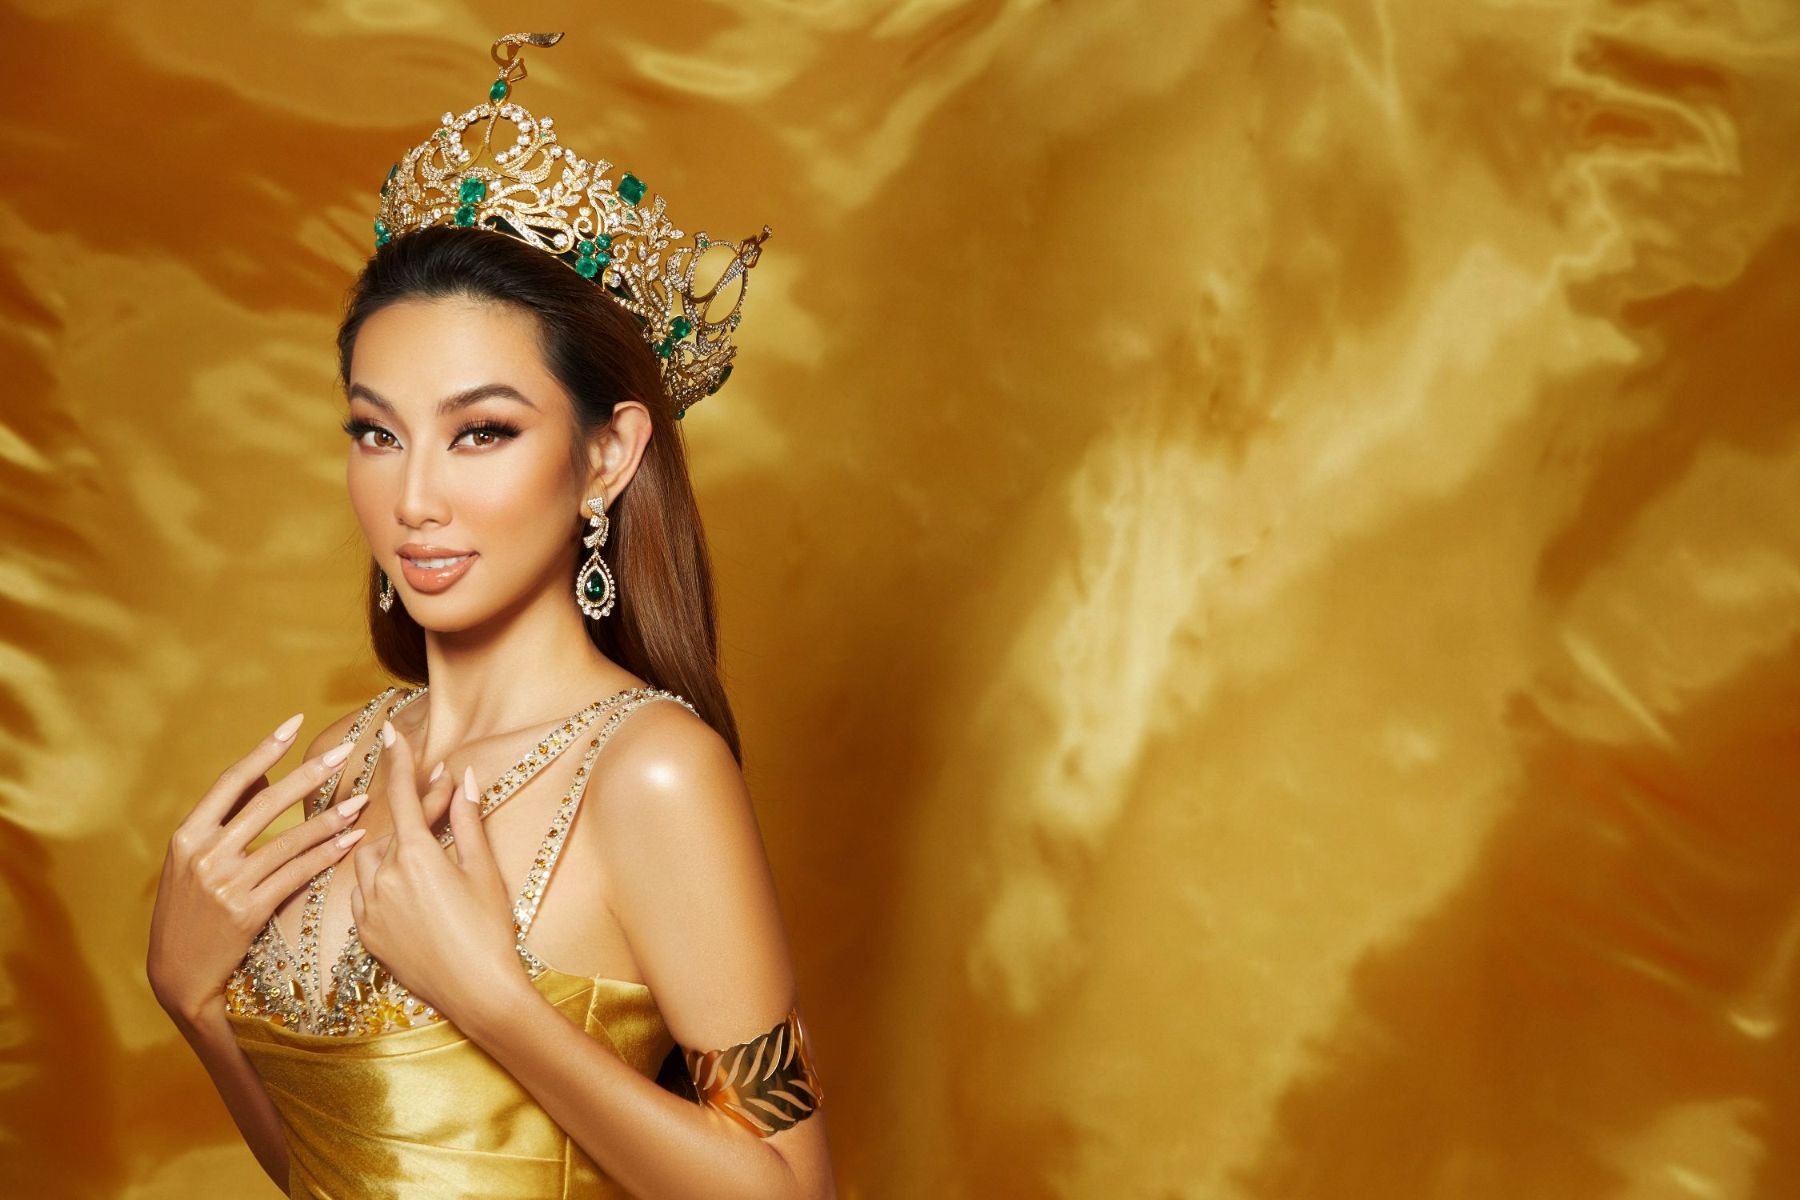 MISS GRAND THUY TIEN Miss Grand Vietnam 2022 khởi động, tìm kiếm người kế nhiệm Nguyễn Thúc Thùy Tiên